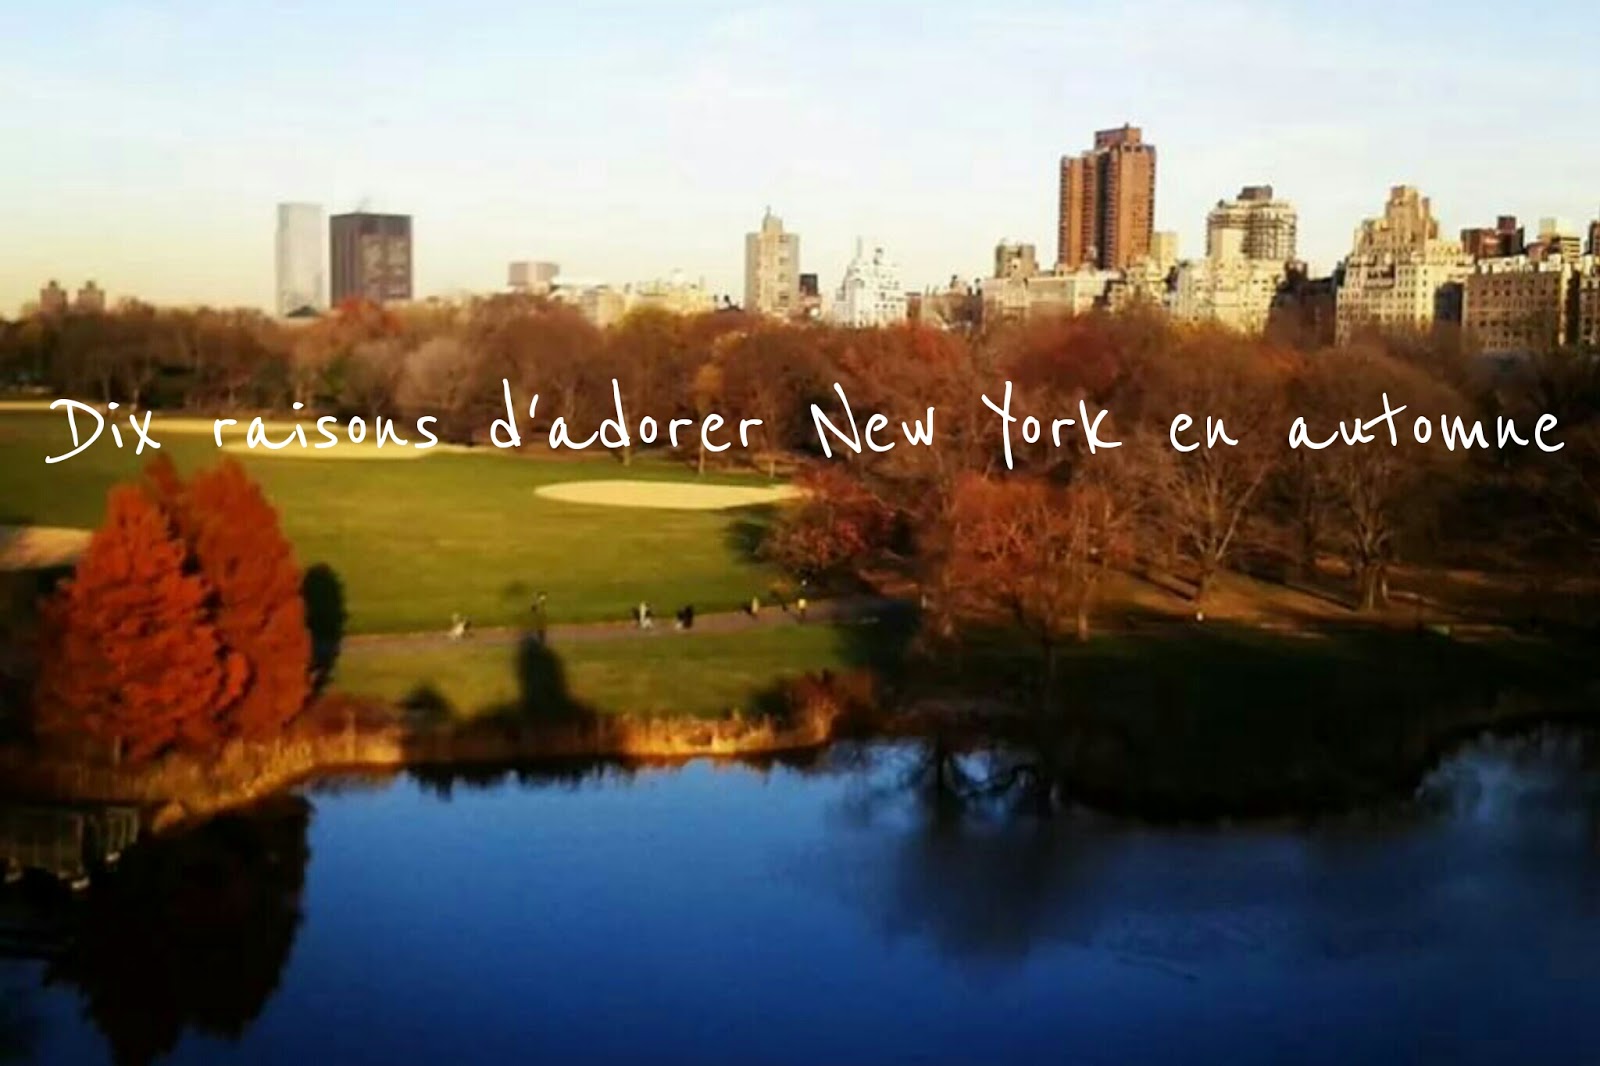 Dix raisons d’adorer New York en automne